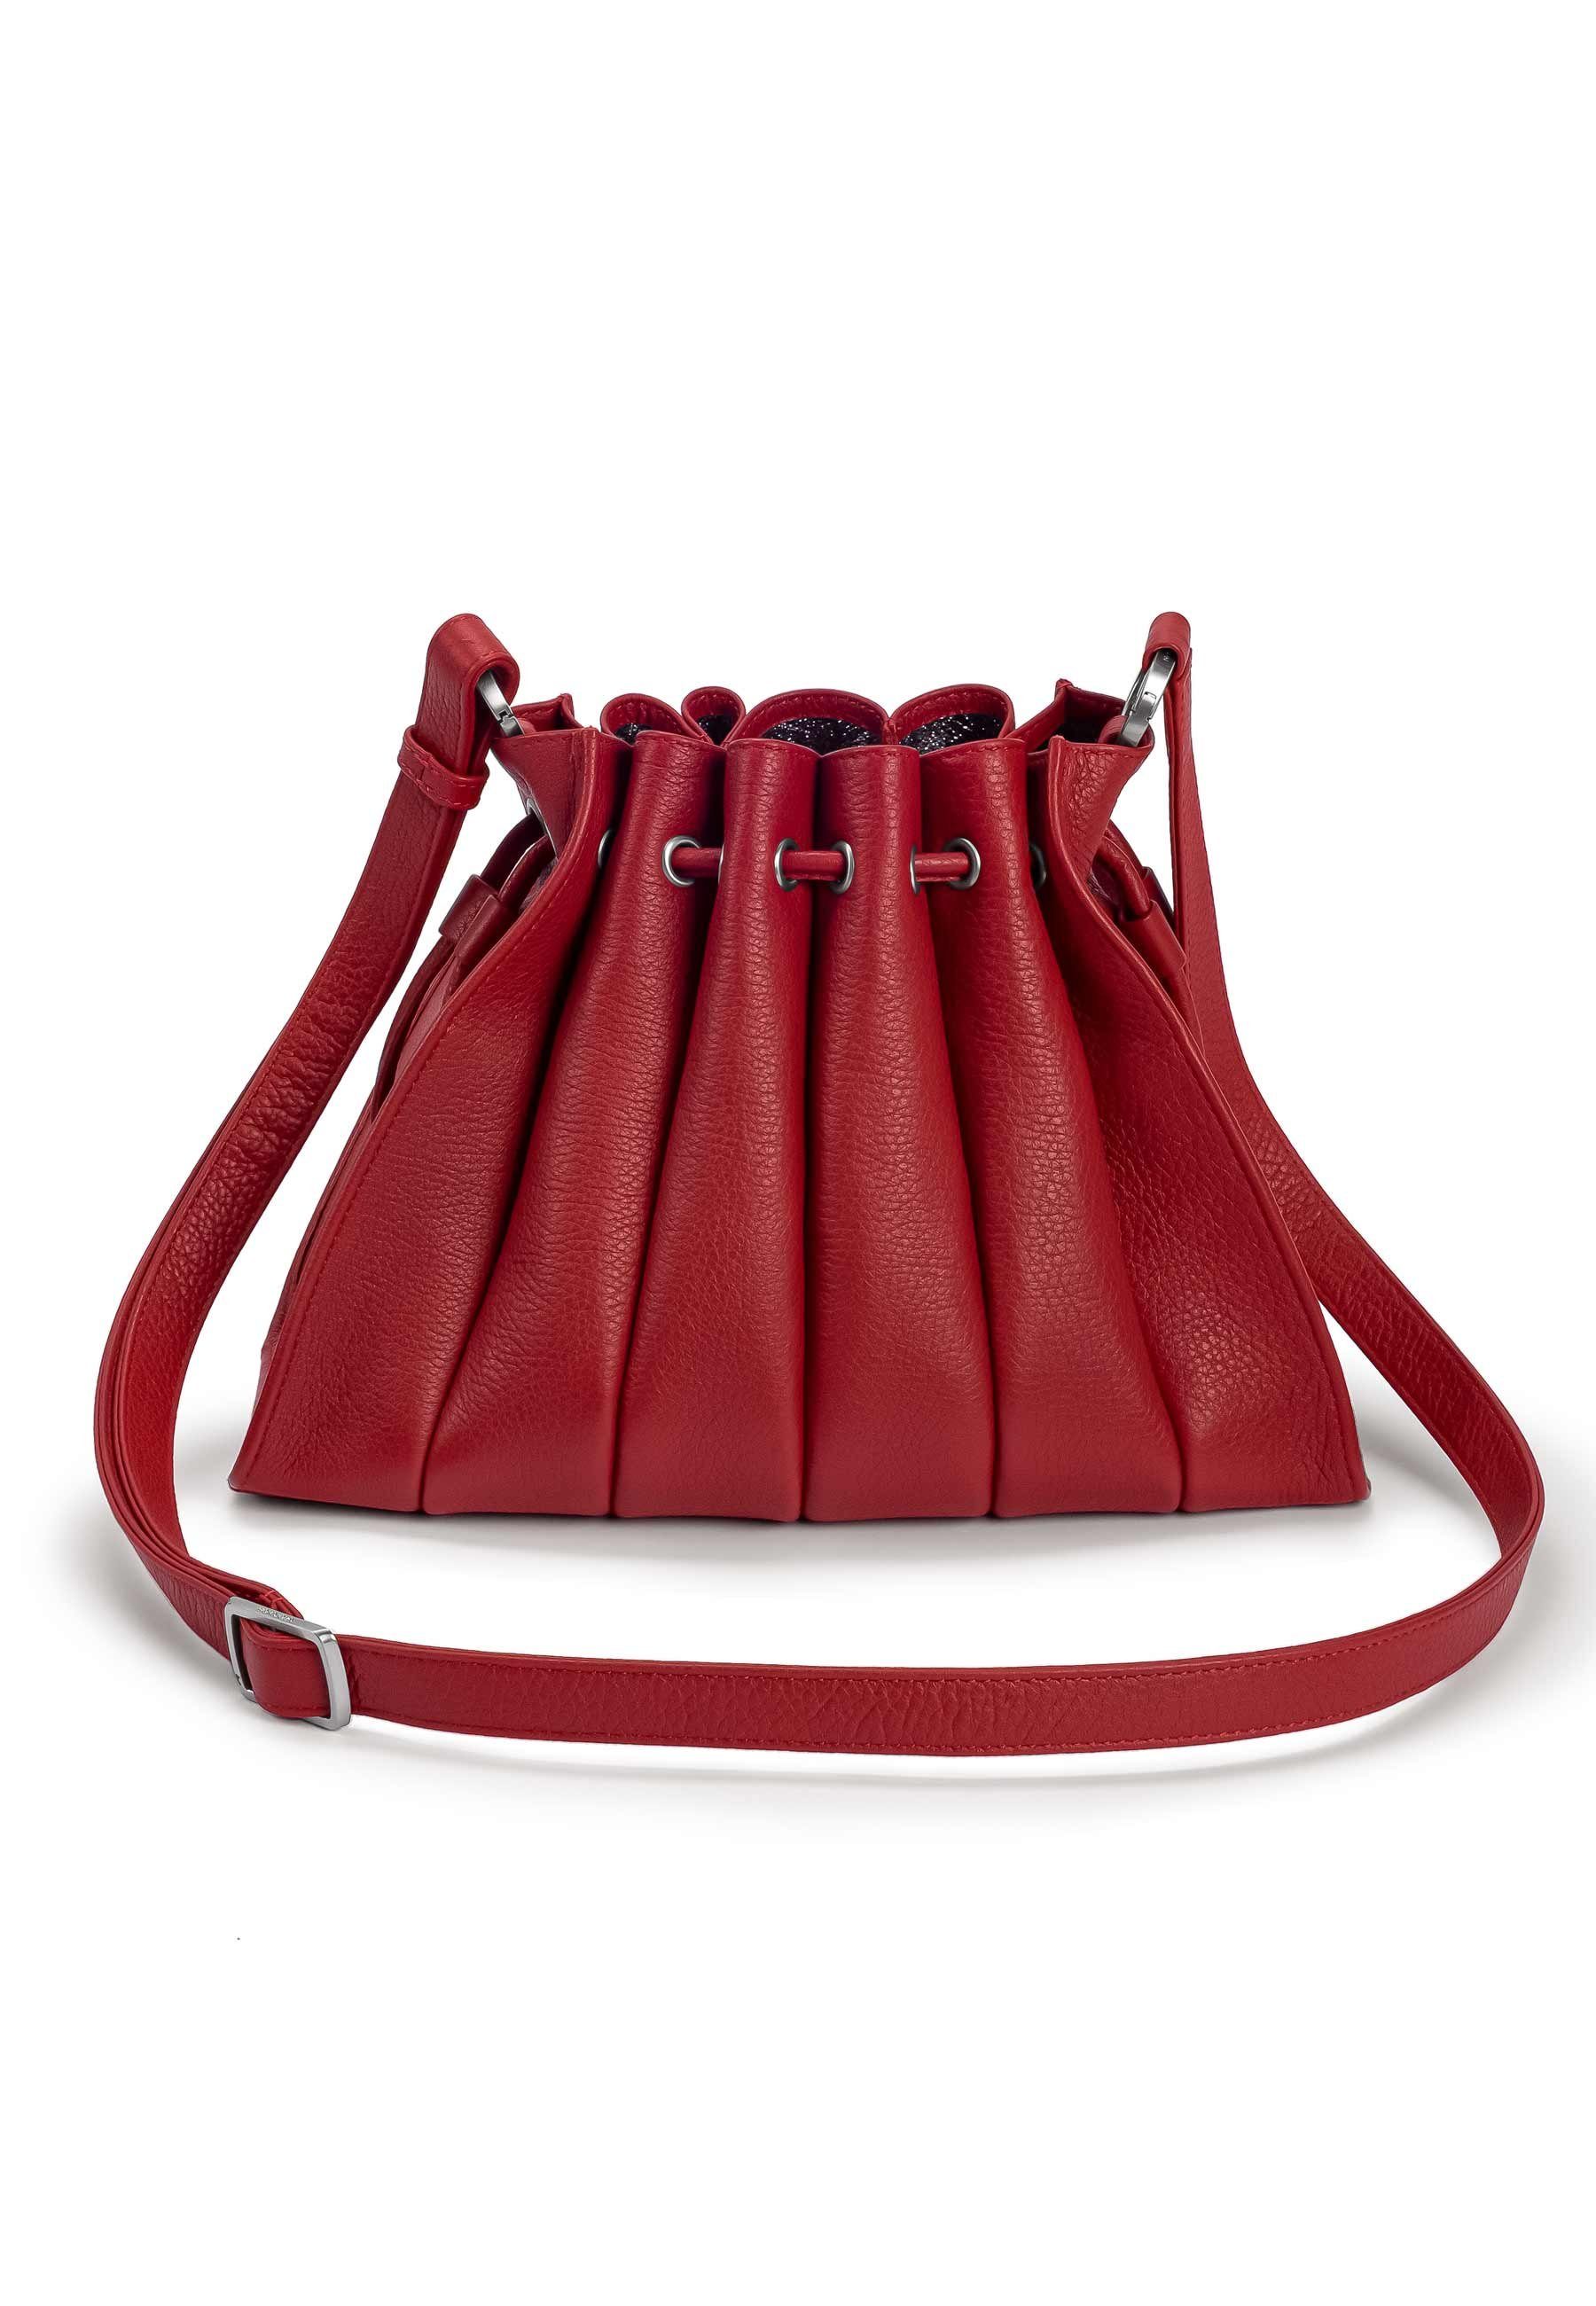 GRETCHEN Schultertasche Fan Shoulderbag, in modischer Fächer-Optik rot-silberfarben